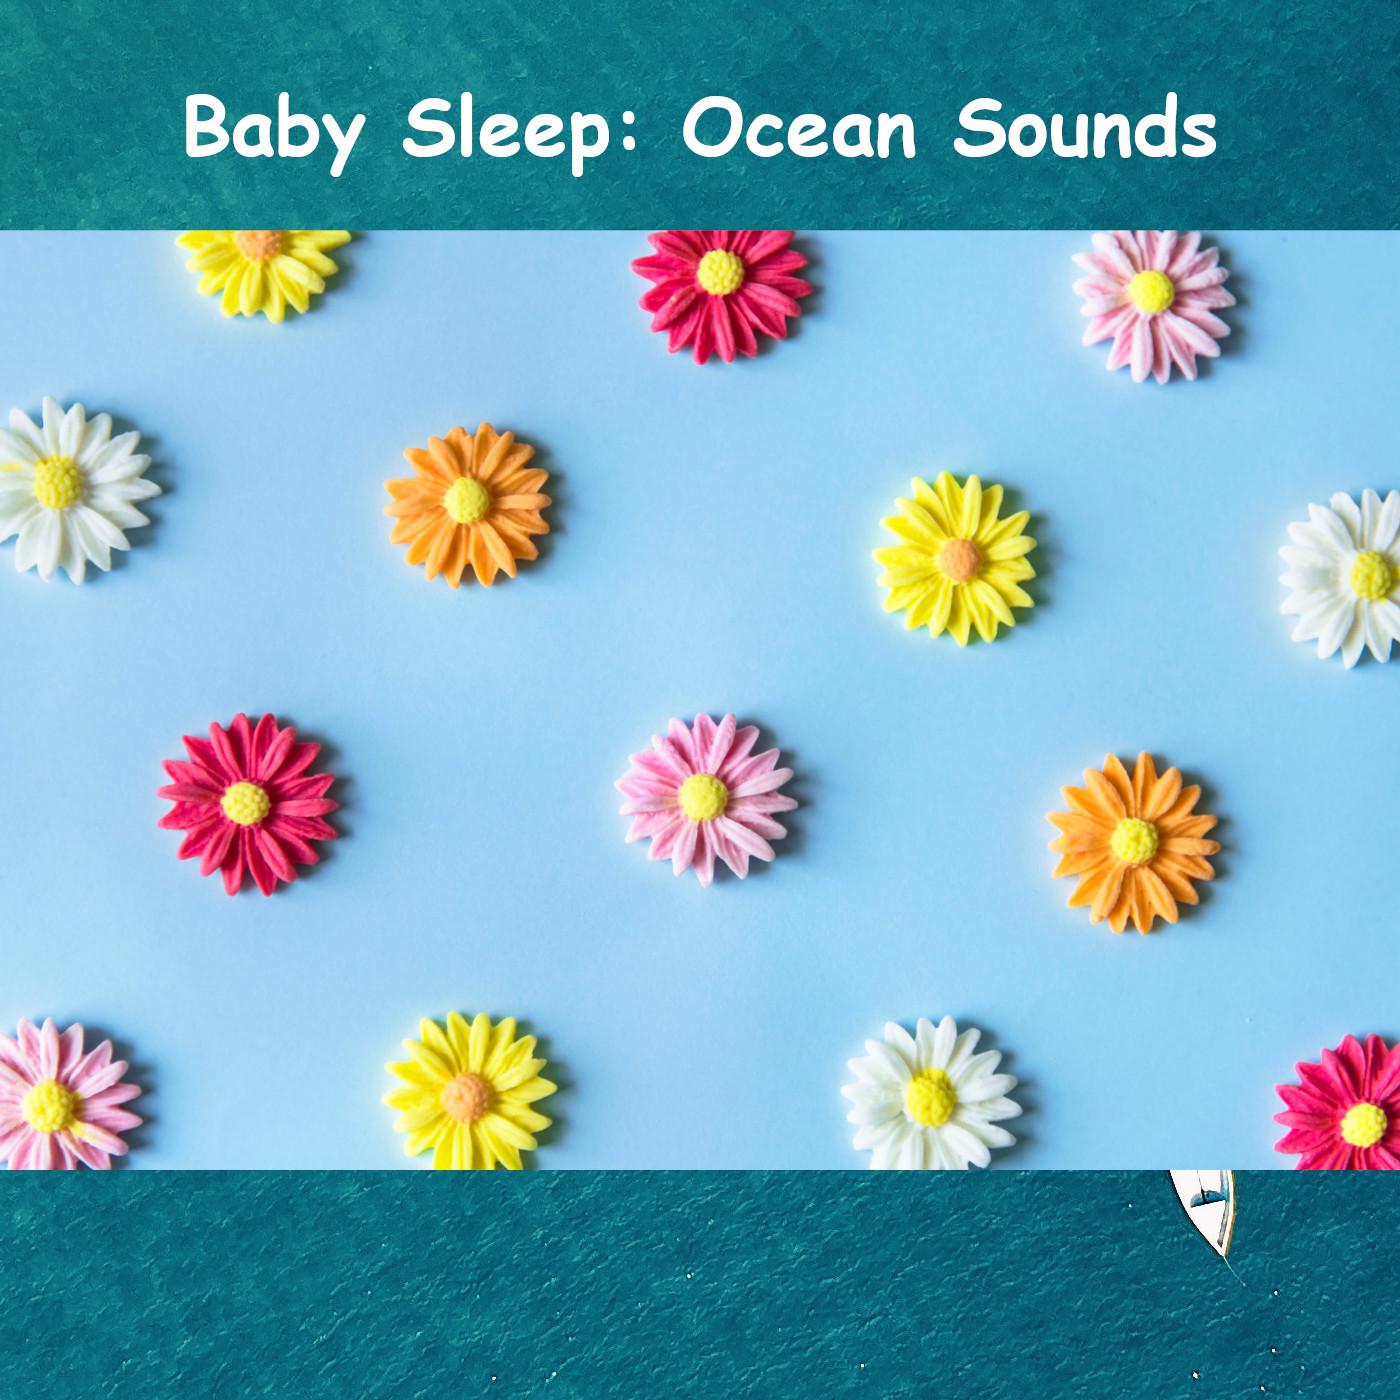 Baby Sleep: Ocean Sounds